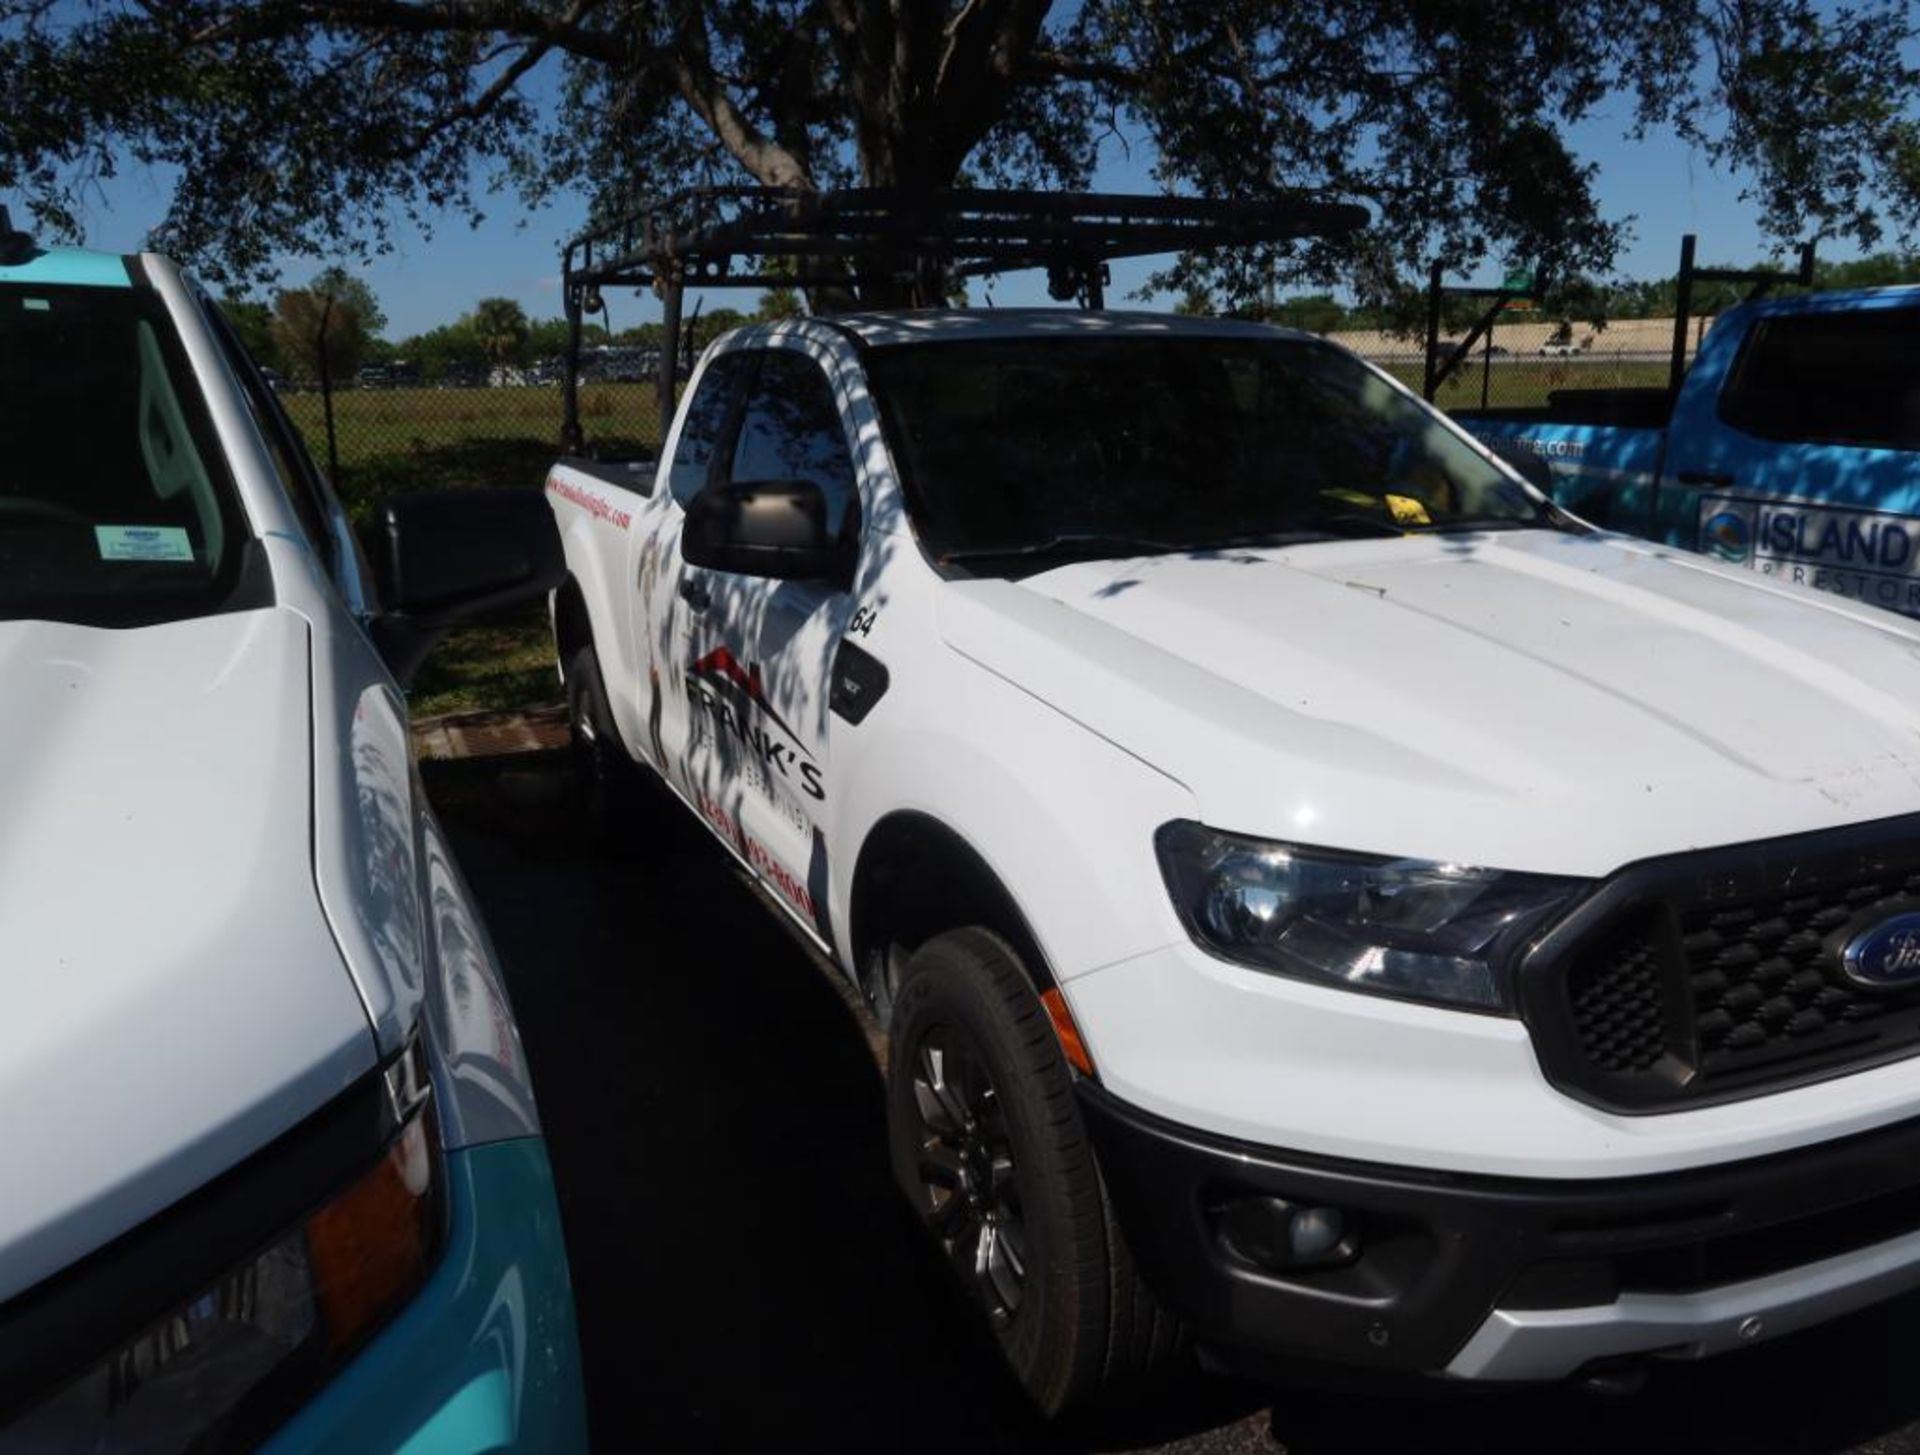 2019 Ford Ranger Ecoboost Ladder Rack and Tool Box, Gas, License# 55BIKJ, VIN 1FTER1EH6KLB12352, 55, - Image 3 of 8